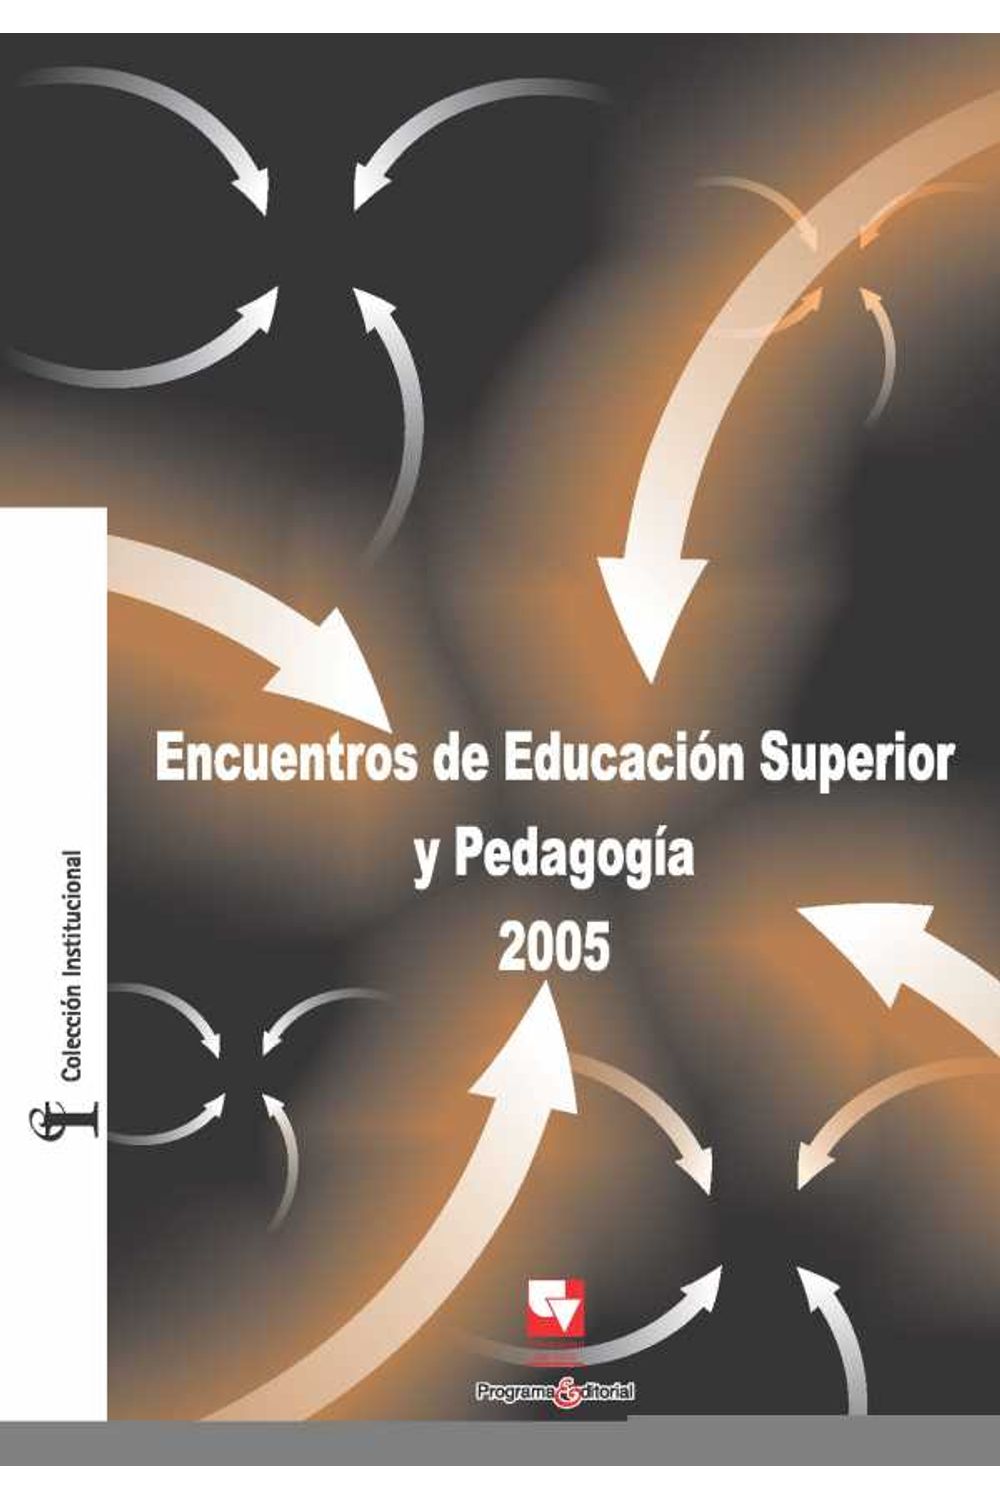 bw-encuentros-de-educacioacuten-superior-y-pedagogiacutea-2005-programa-editorial-universidad-del-valle-9789585156814